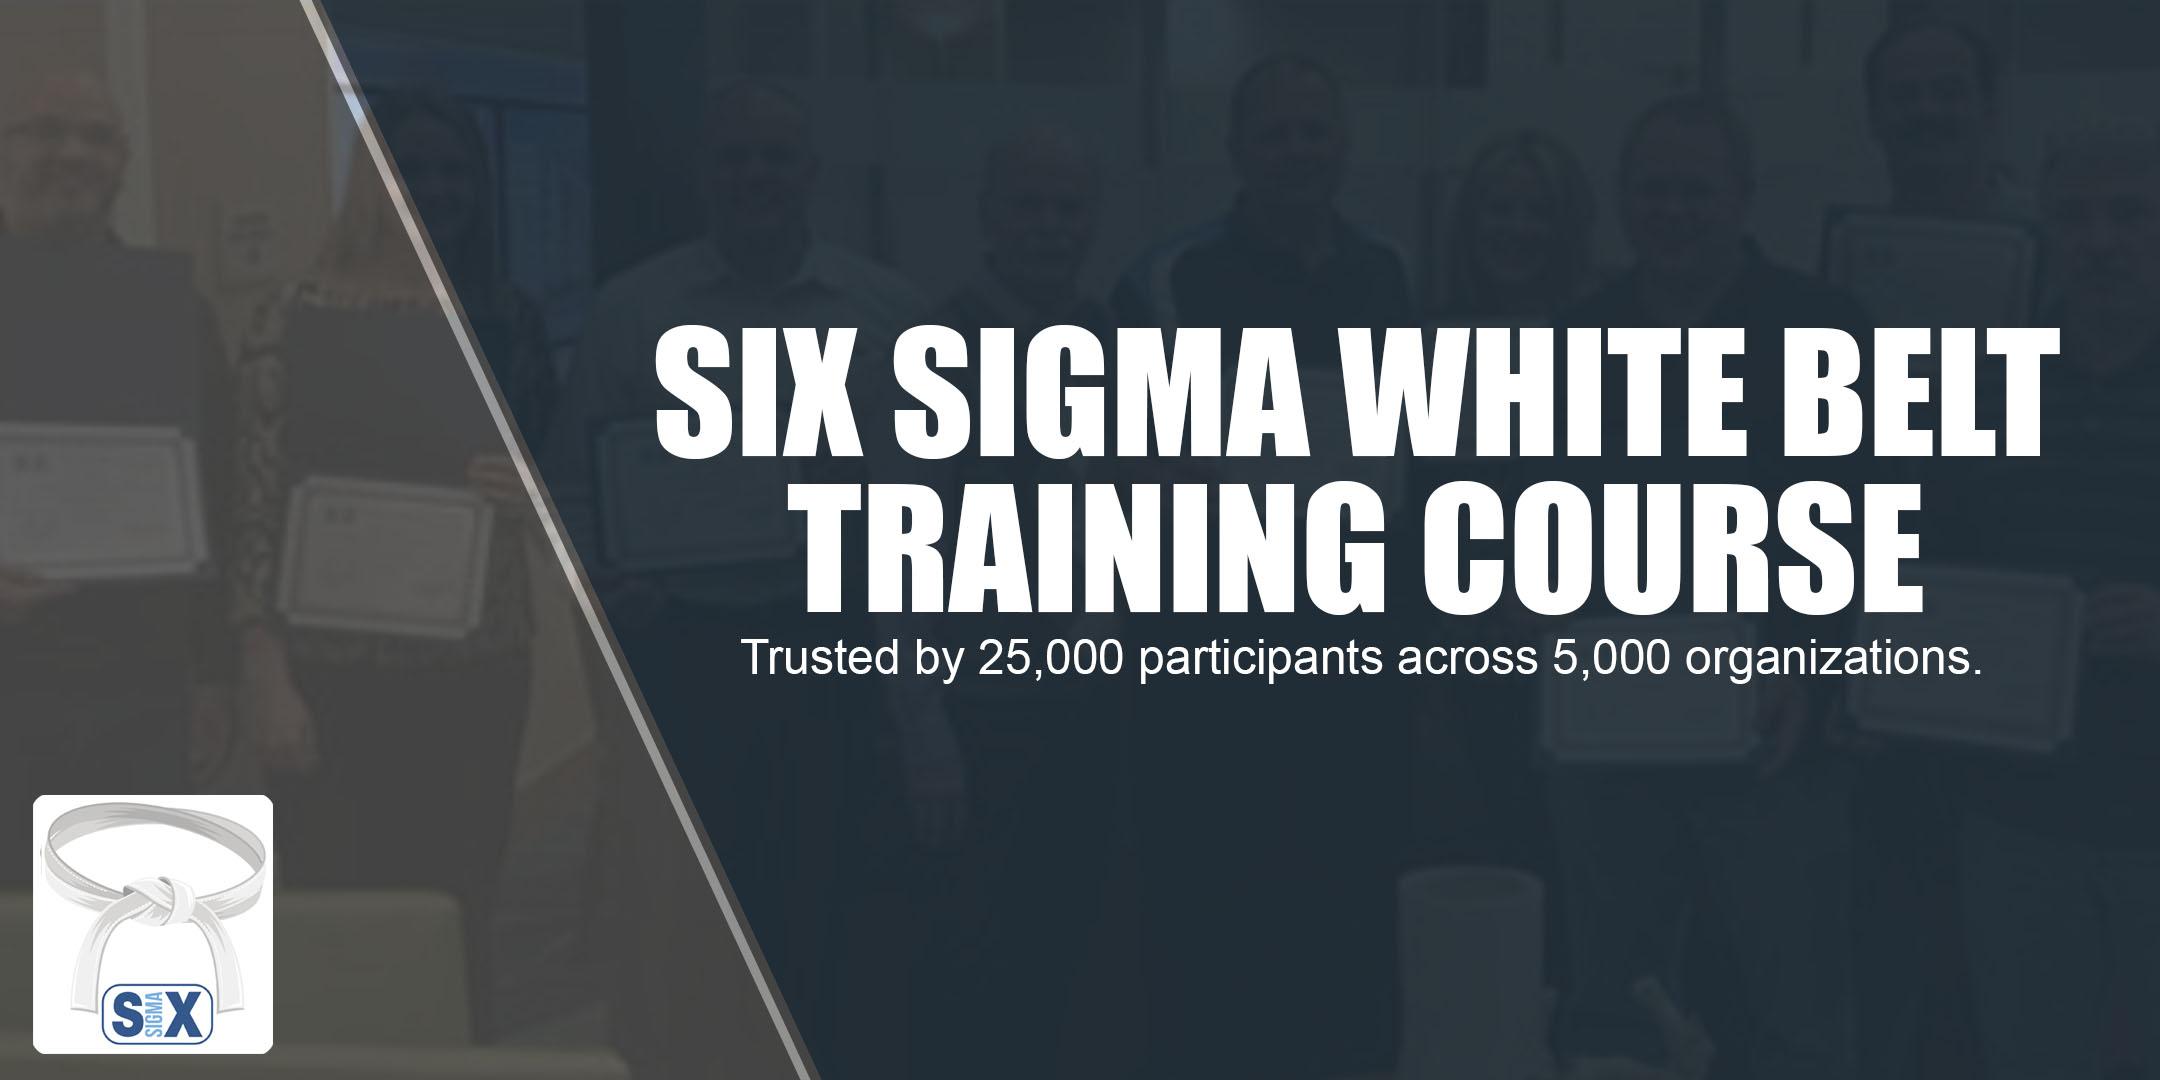 Six Sigma White Belt Training Course